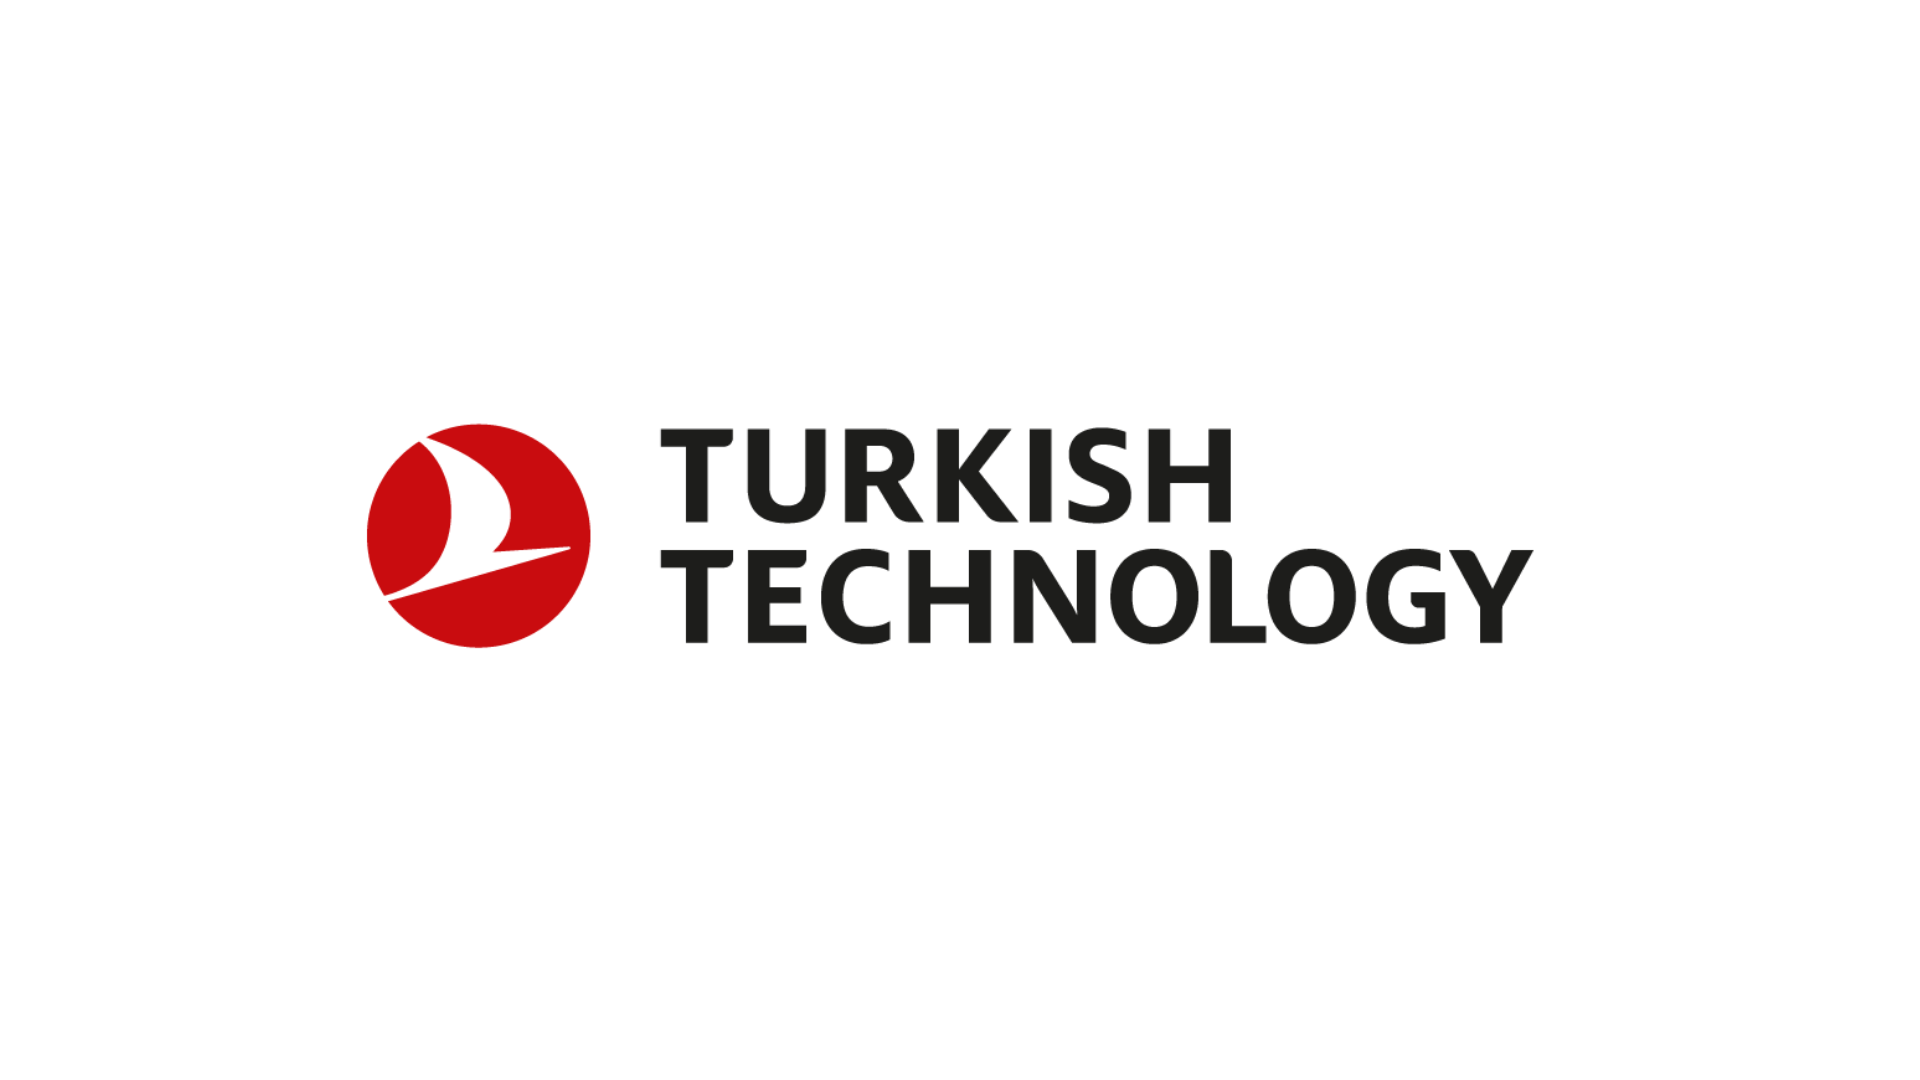 Turkish Technology